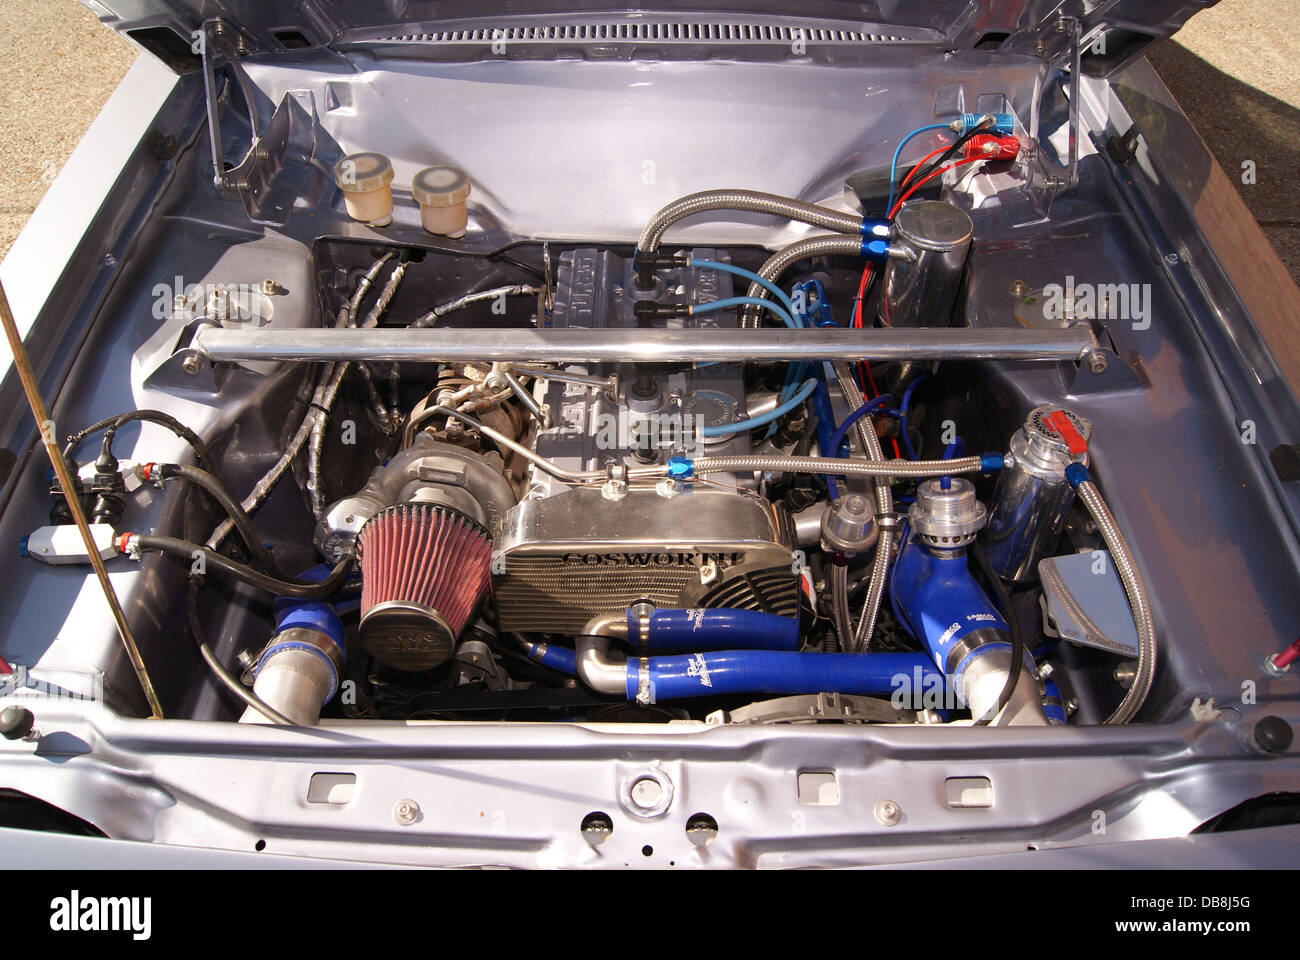 Motore Cosworth Foto Stock